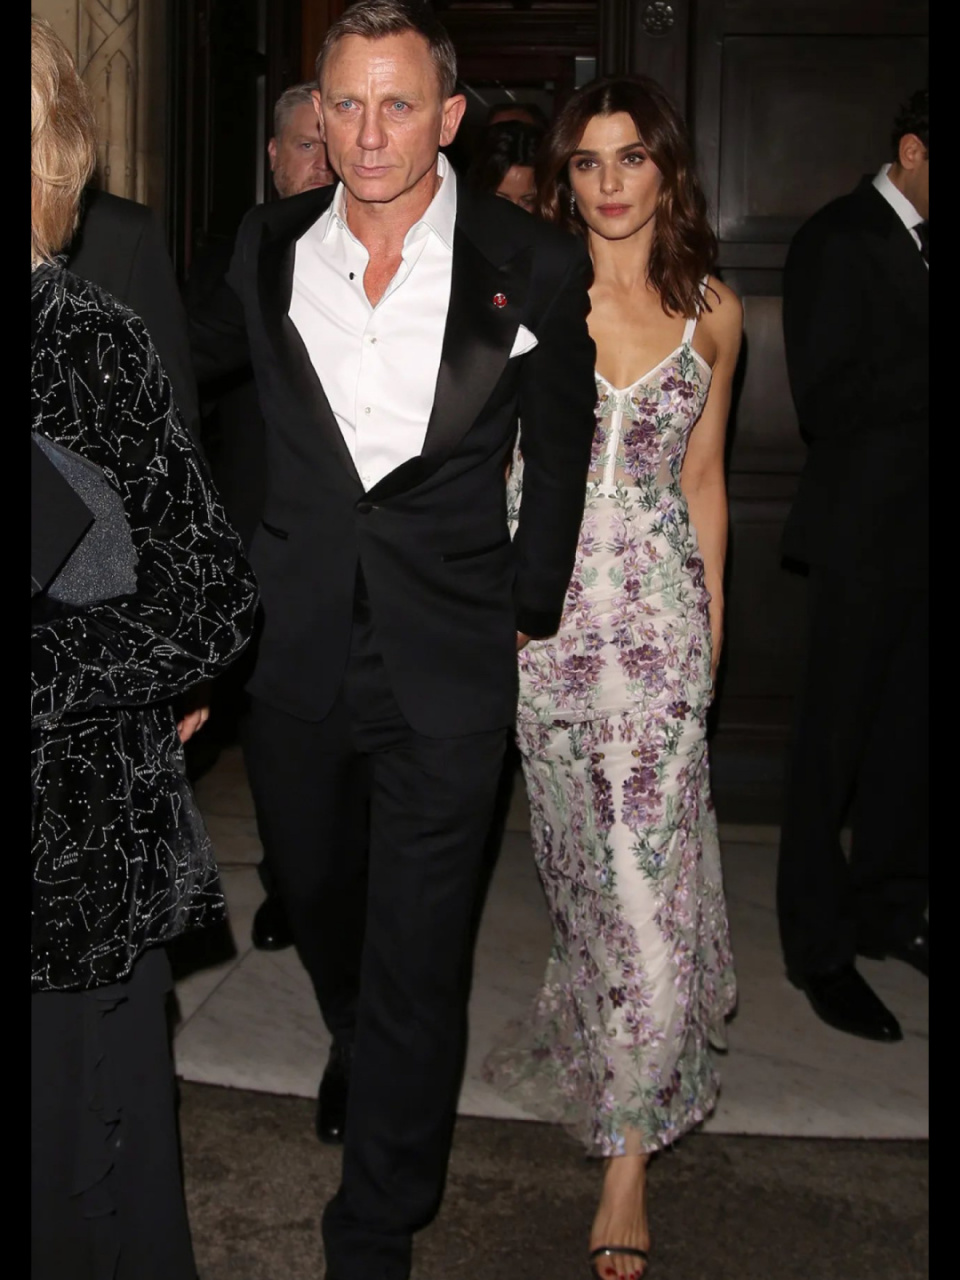 是007丹尼尔·克雷格和妻子蕾切尔·薇姿耶 我一直觉得《皇家赌场》是